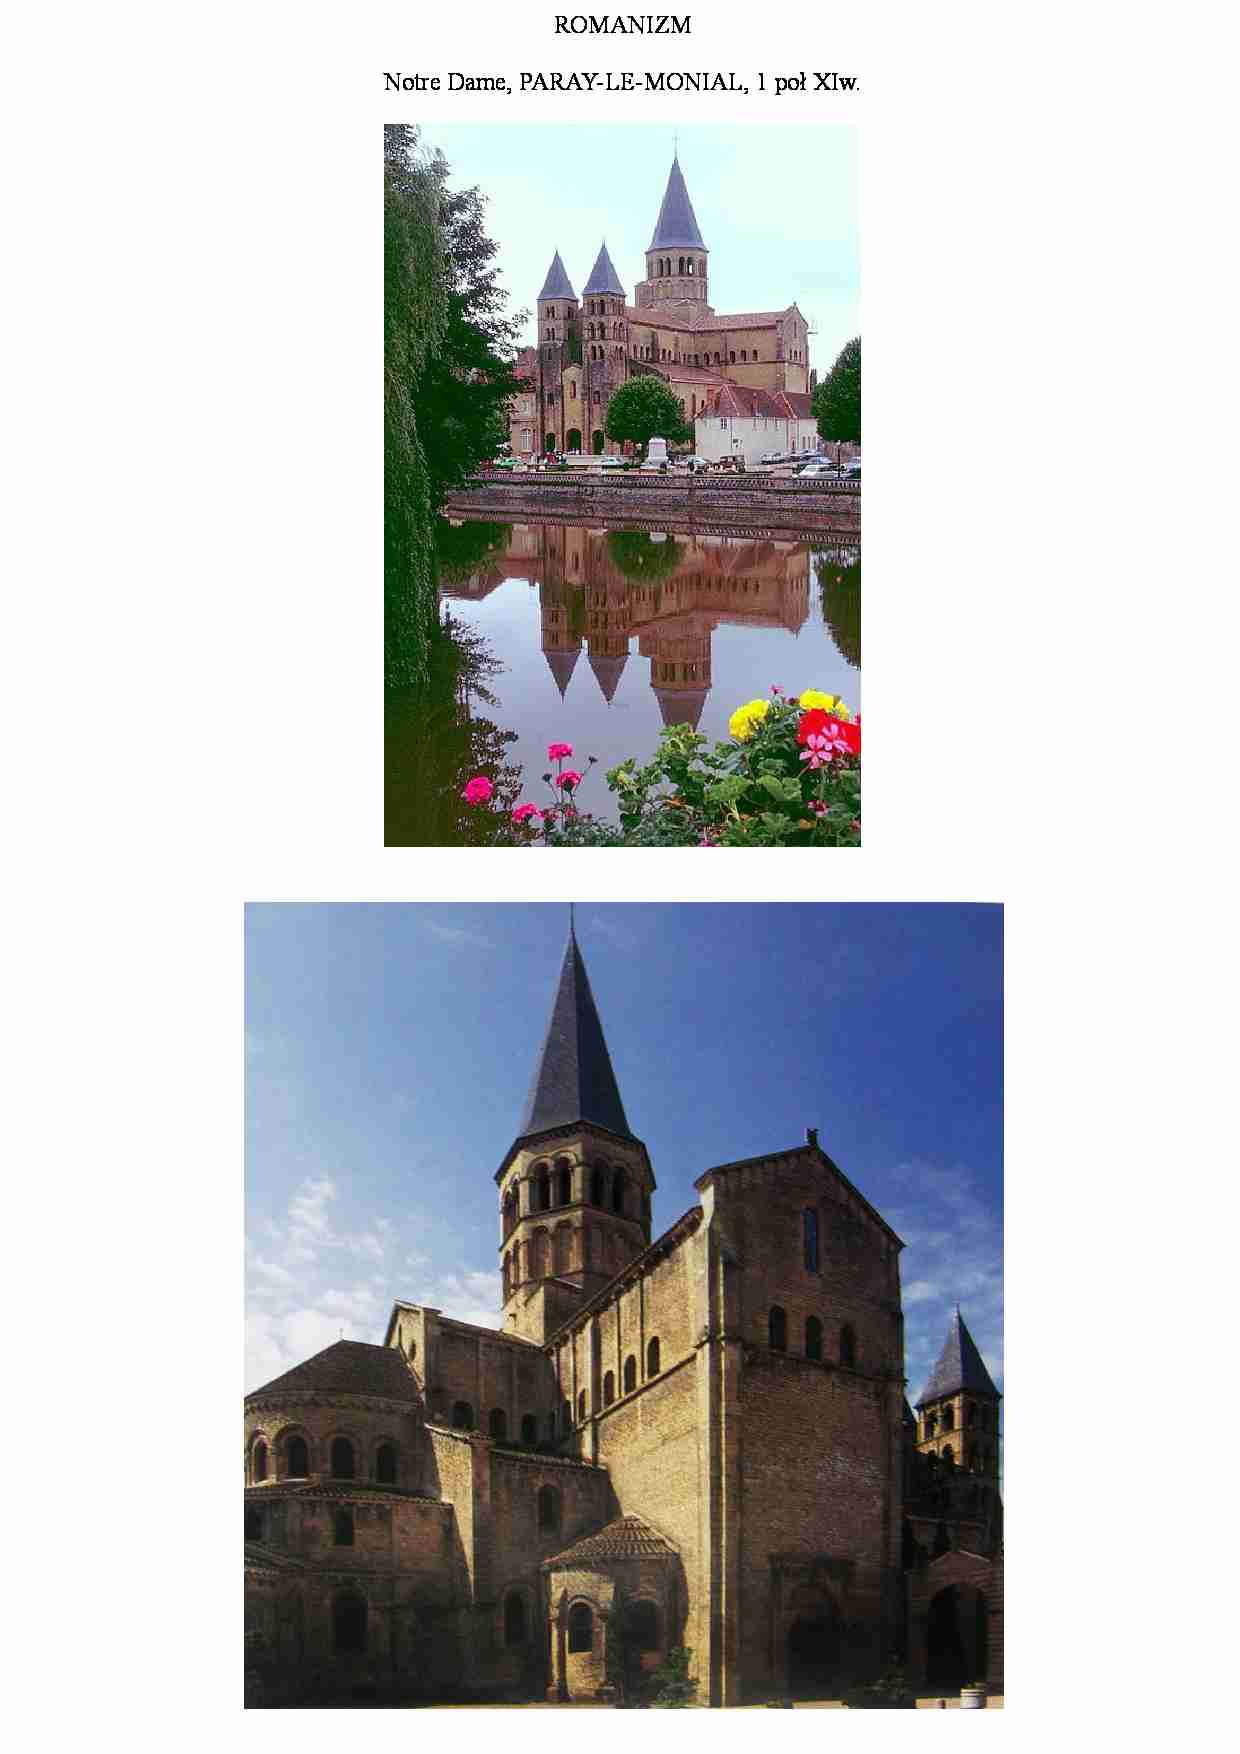 Notre Dame, Paray-le-monial - strona 1